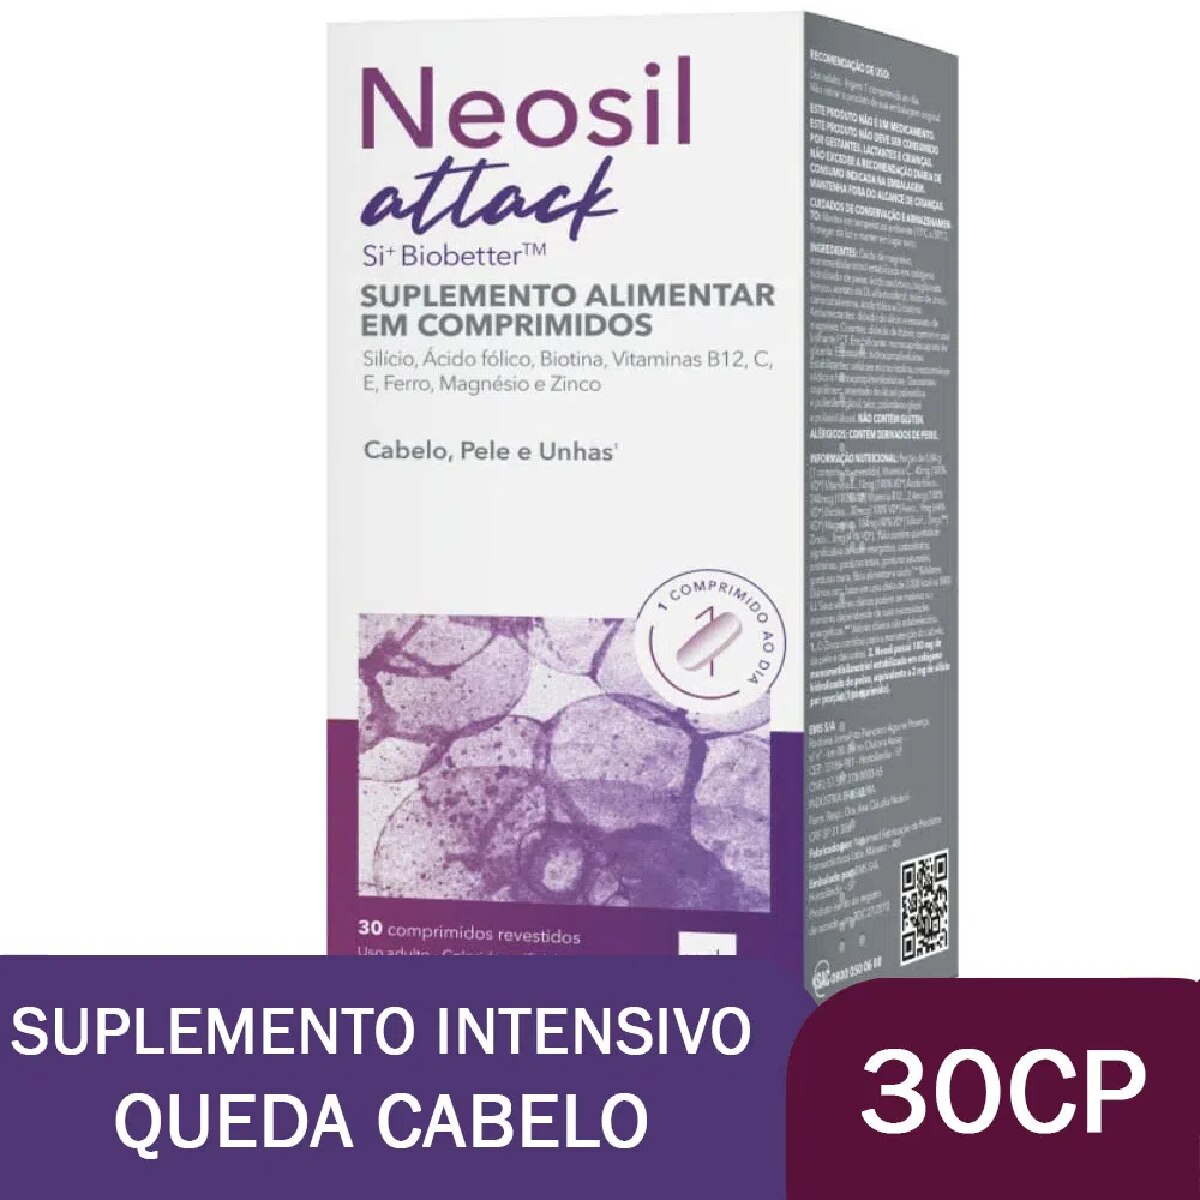 Neosil Attack 30 Comprimidos